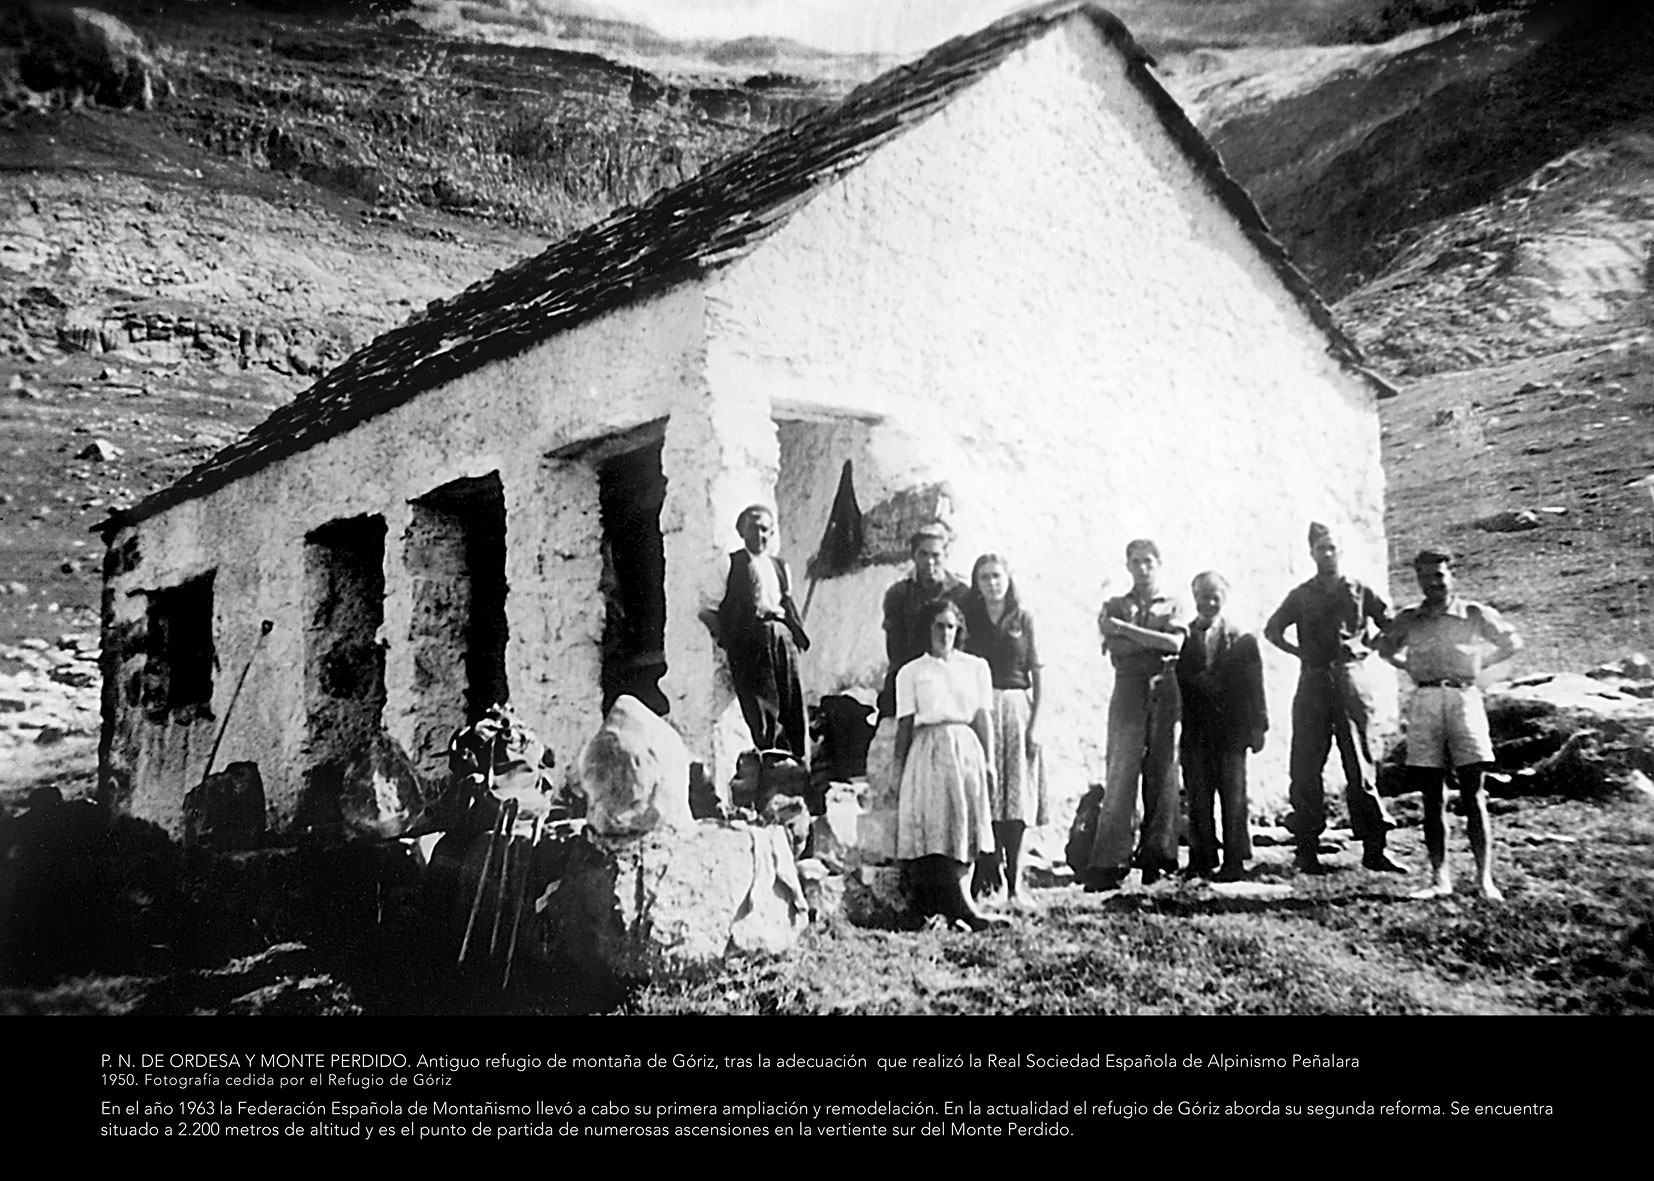 Panel Ordesa 4 - Antiguo refugio de montaña de Góriz, tras la adecuación que realizó la Real Sociedad Española de Alpinismo Peñalara